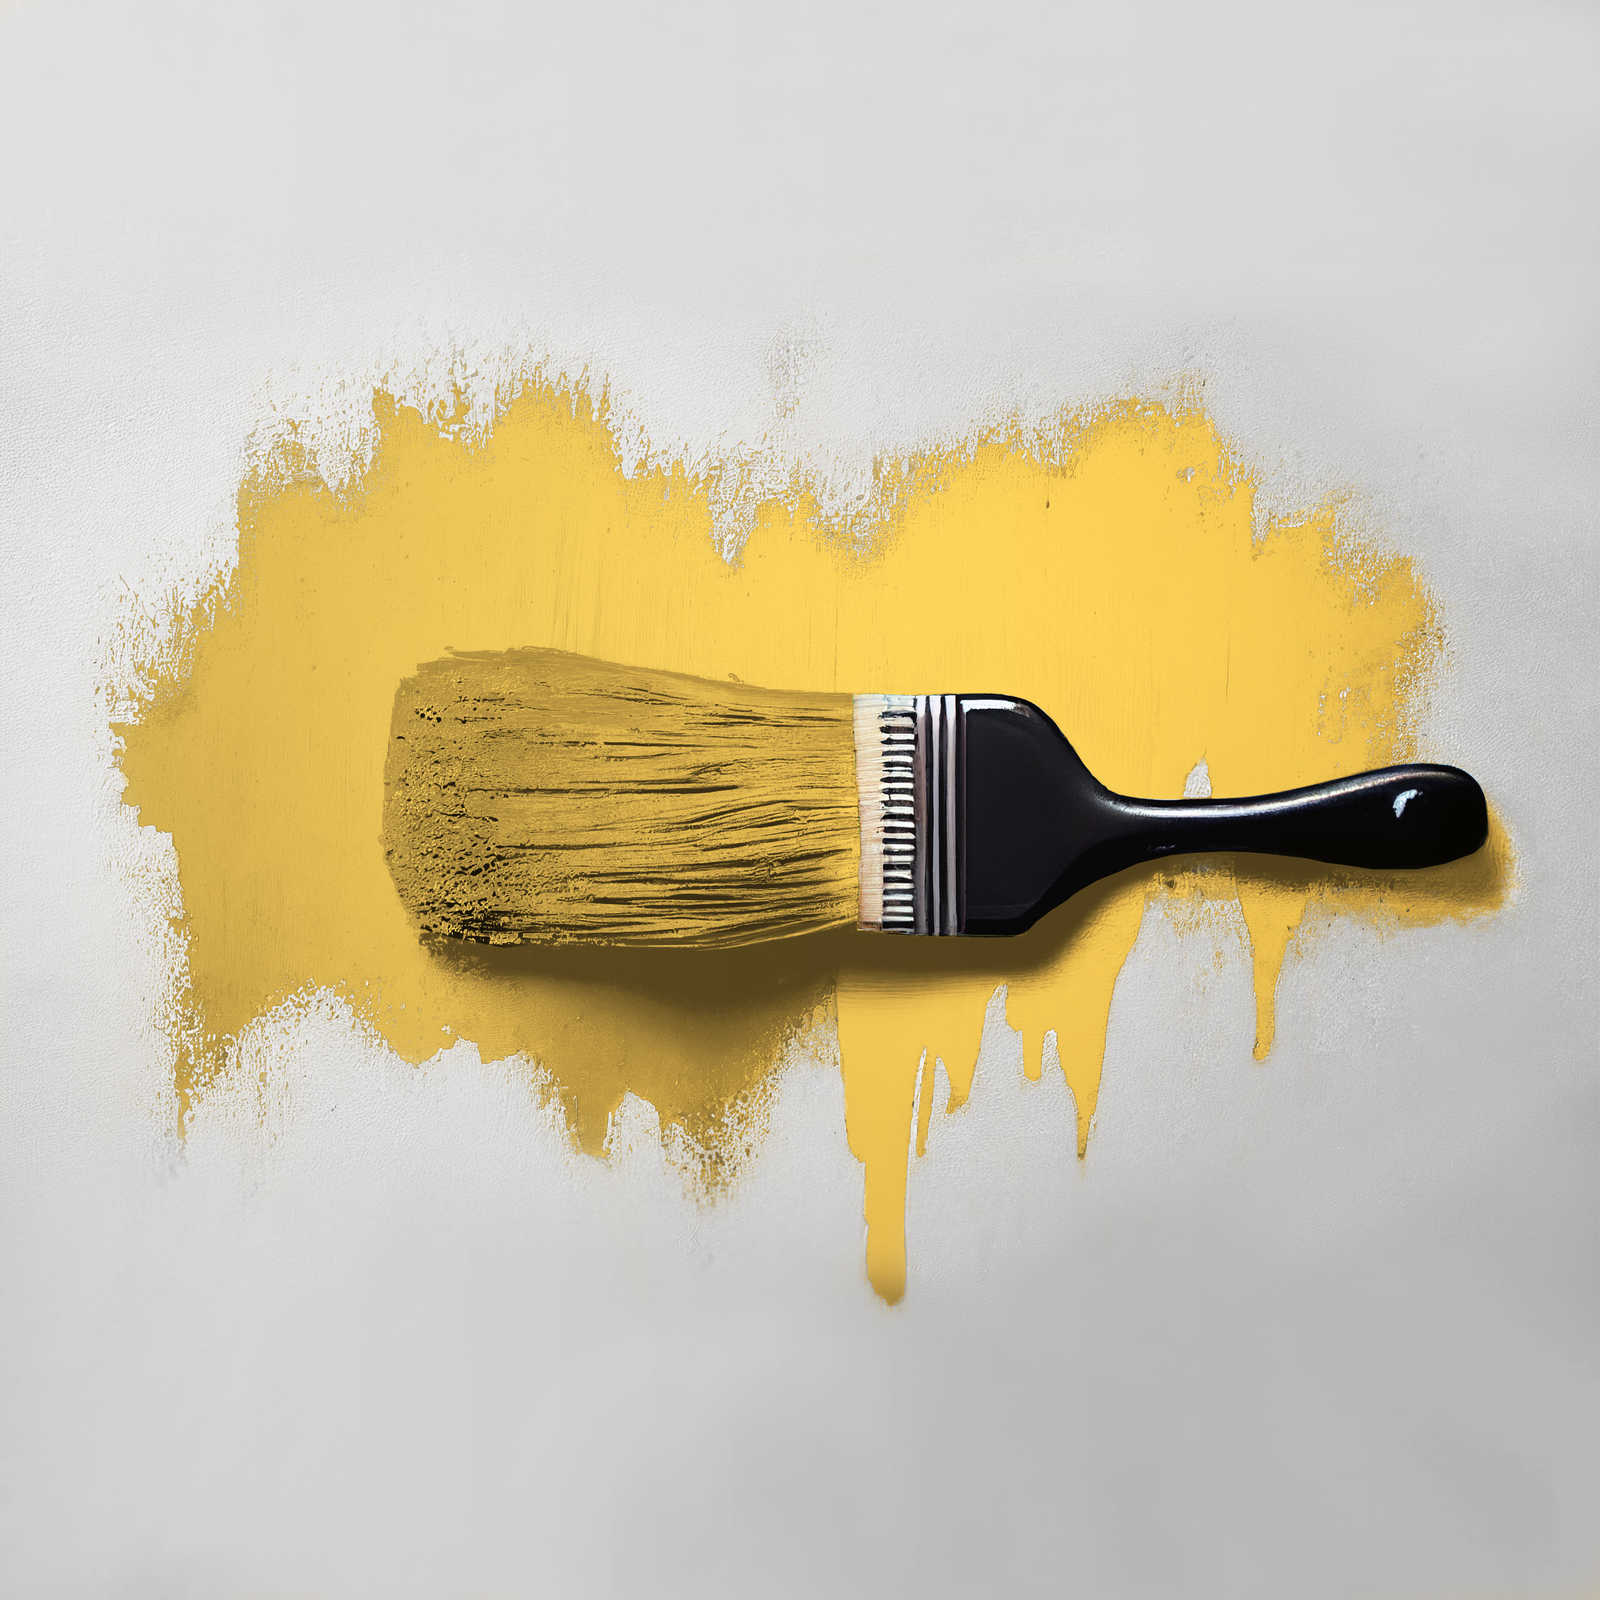             Pintura mural TCK5003 »Mighty Mango« en amarillo brillante – 2,5 litro
        